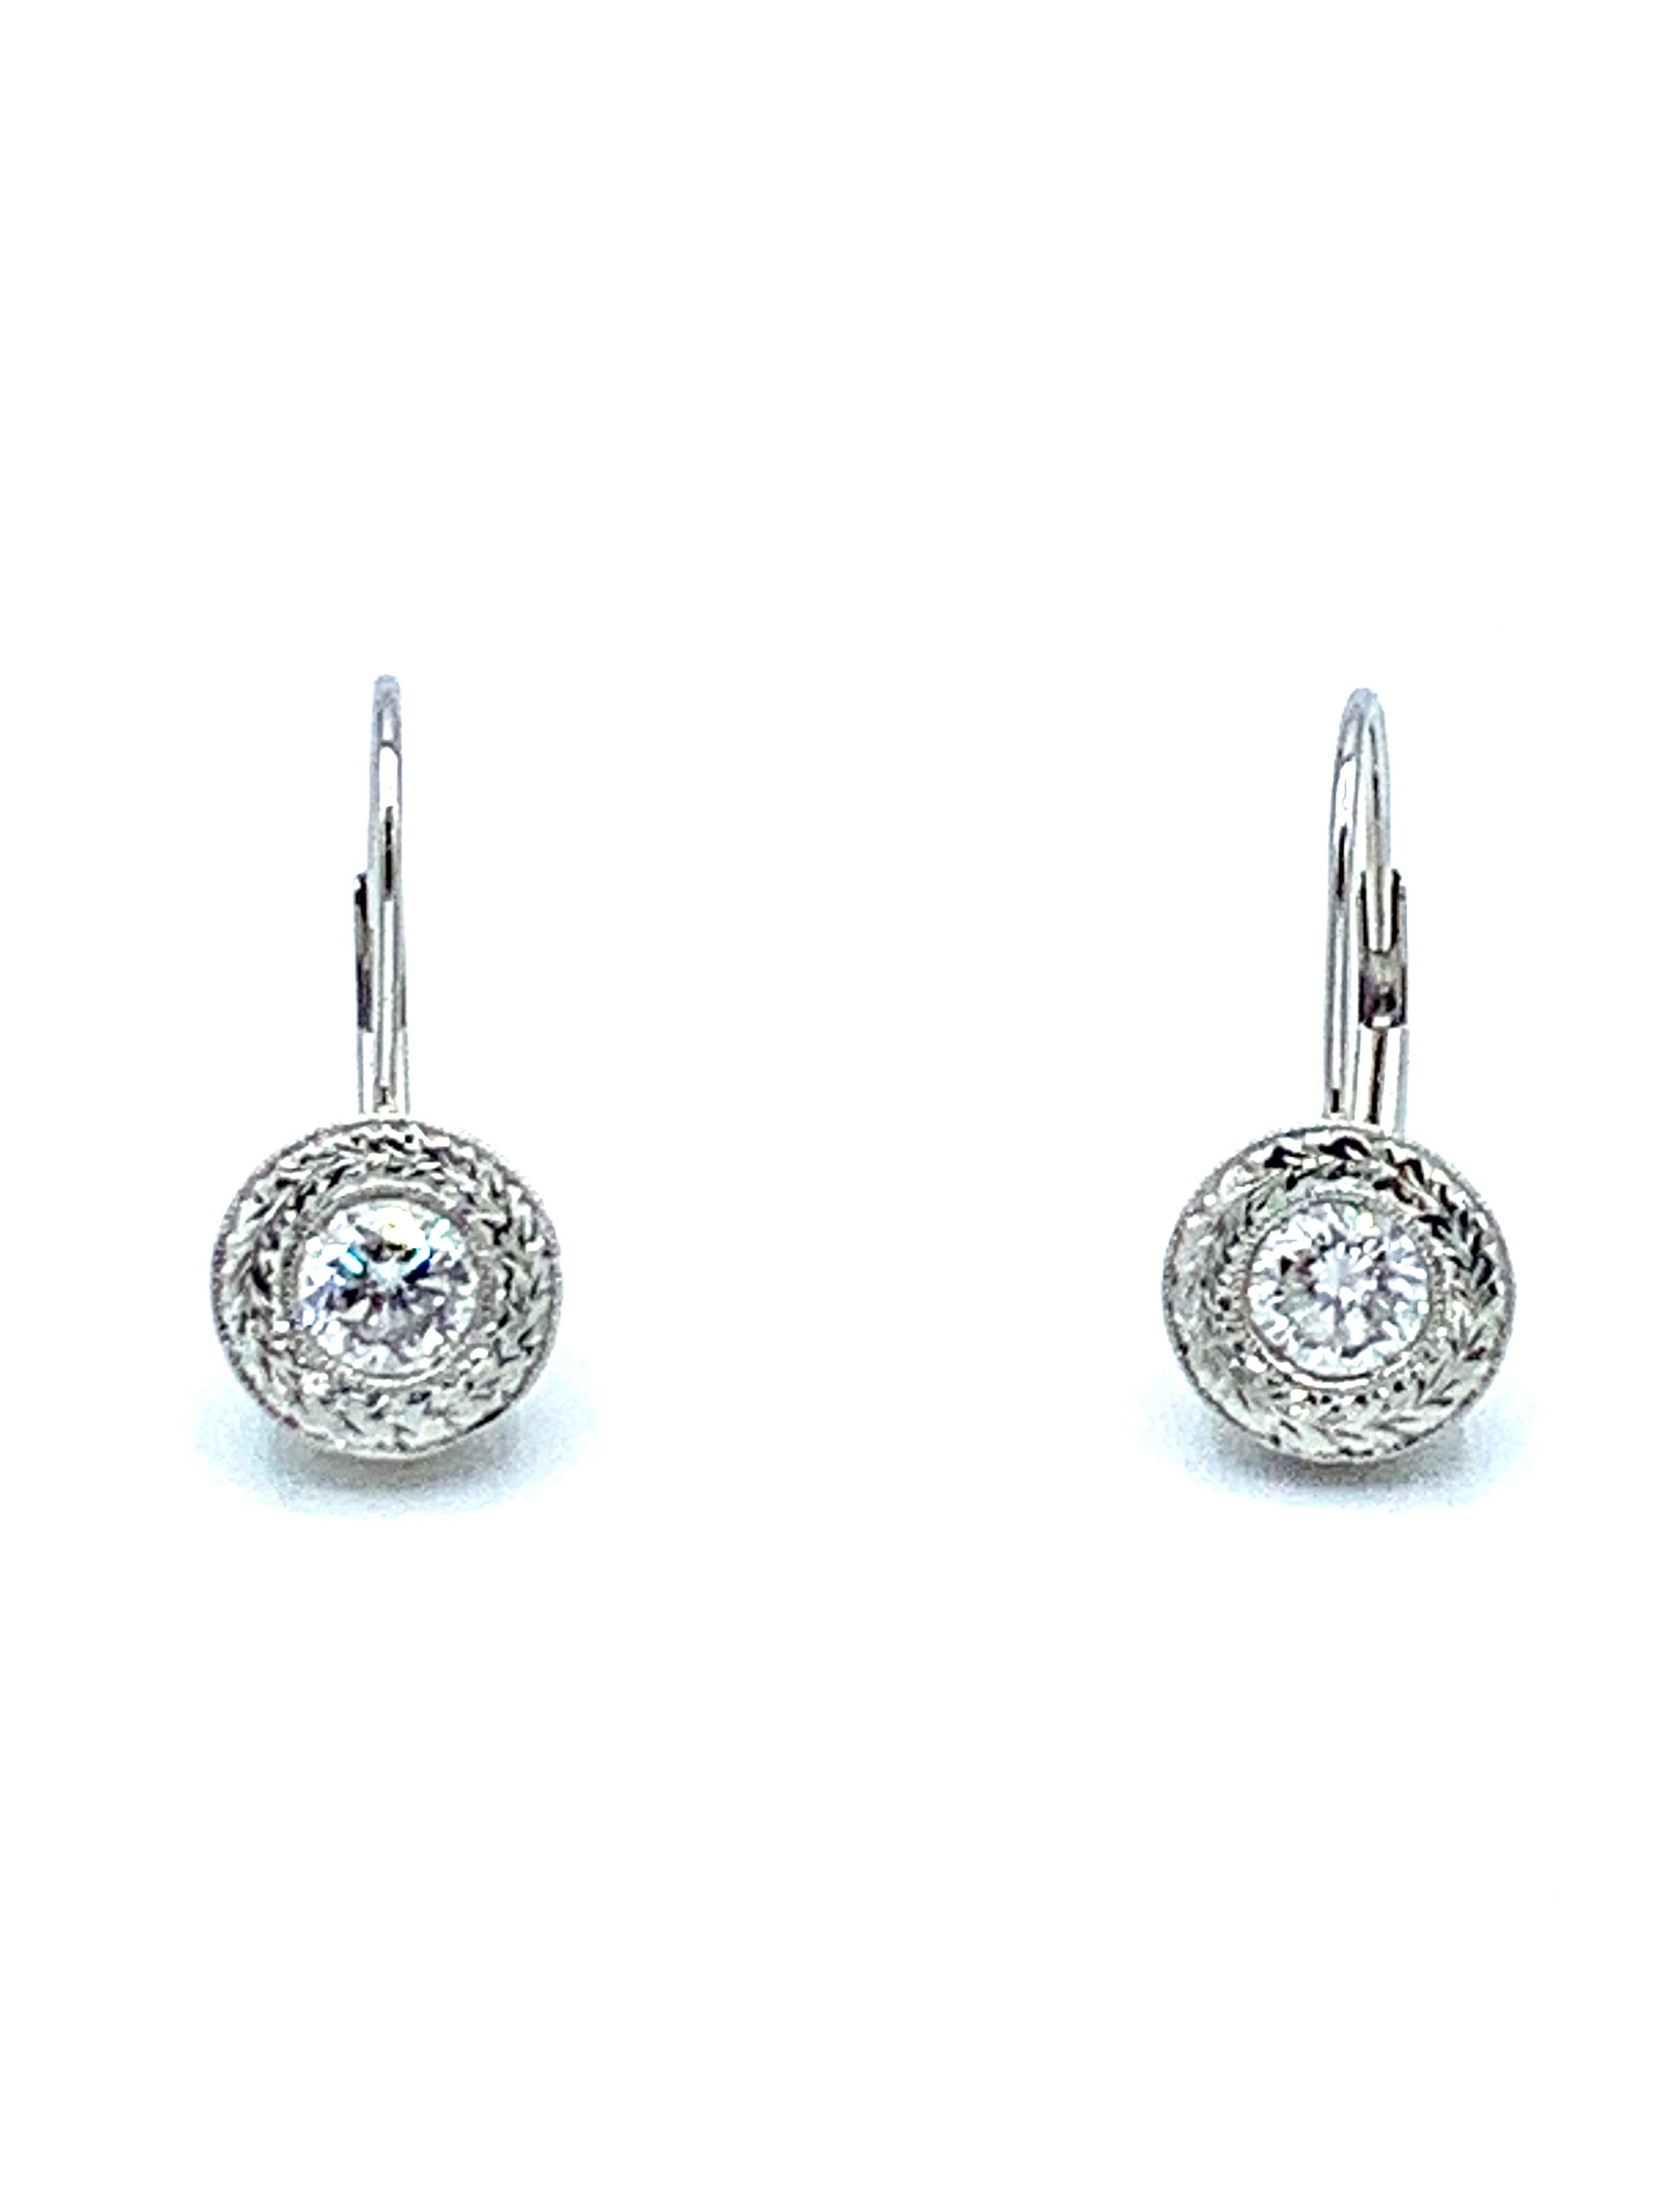 Ein wunderschönes, leicht zu tragendes Paar Ohrringe!  Die Diamanten mit einem Gesamtgewicht von 1,00 Karat sind in der Lünette gefasst, umgeben von handgravierten Metallarbeiten und hängen an einem gebogenen Hebelverschluss aus Platin.  Die